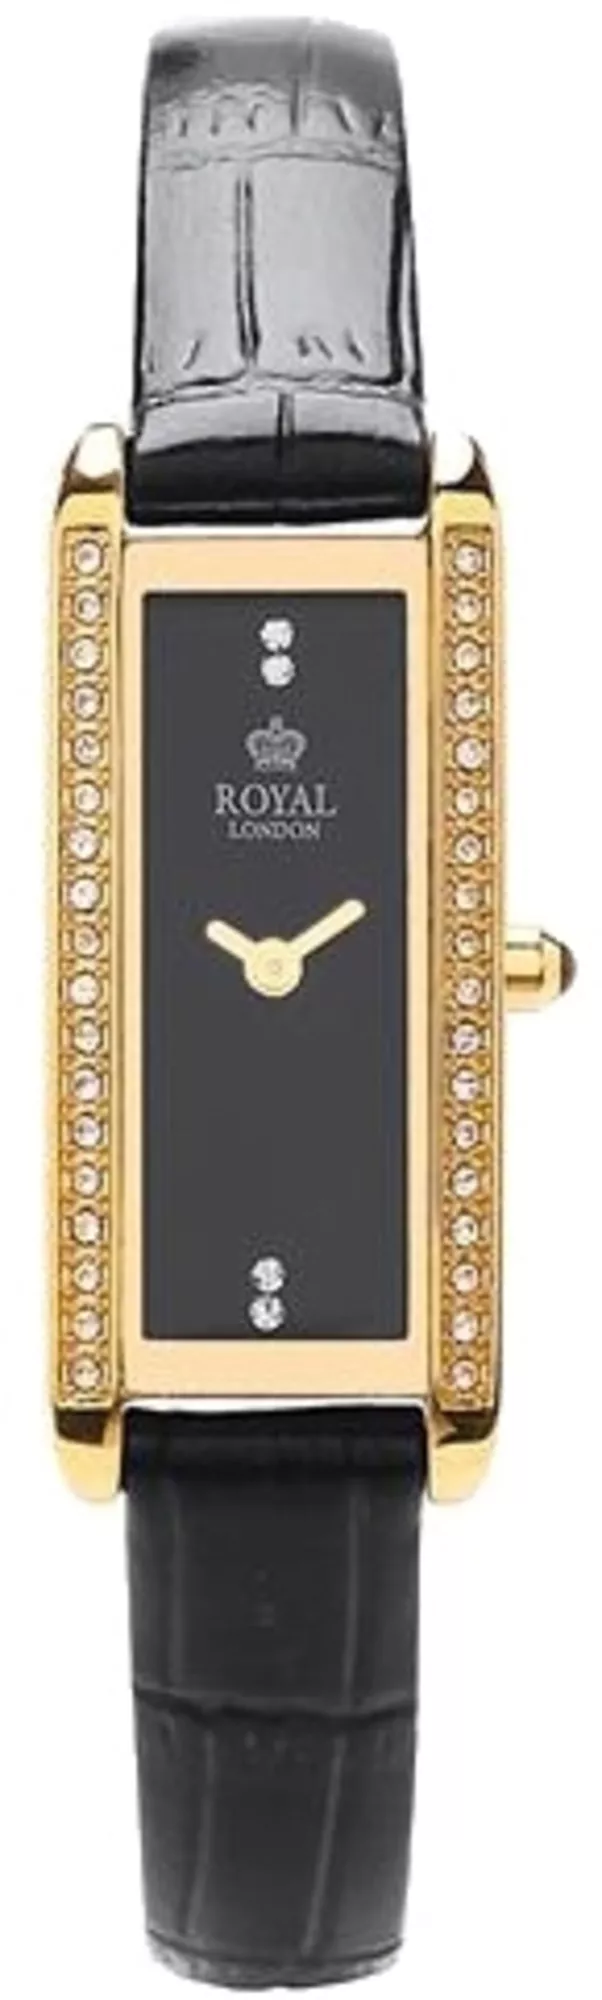 Часы Royal London 21246-05